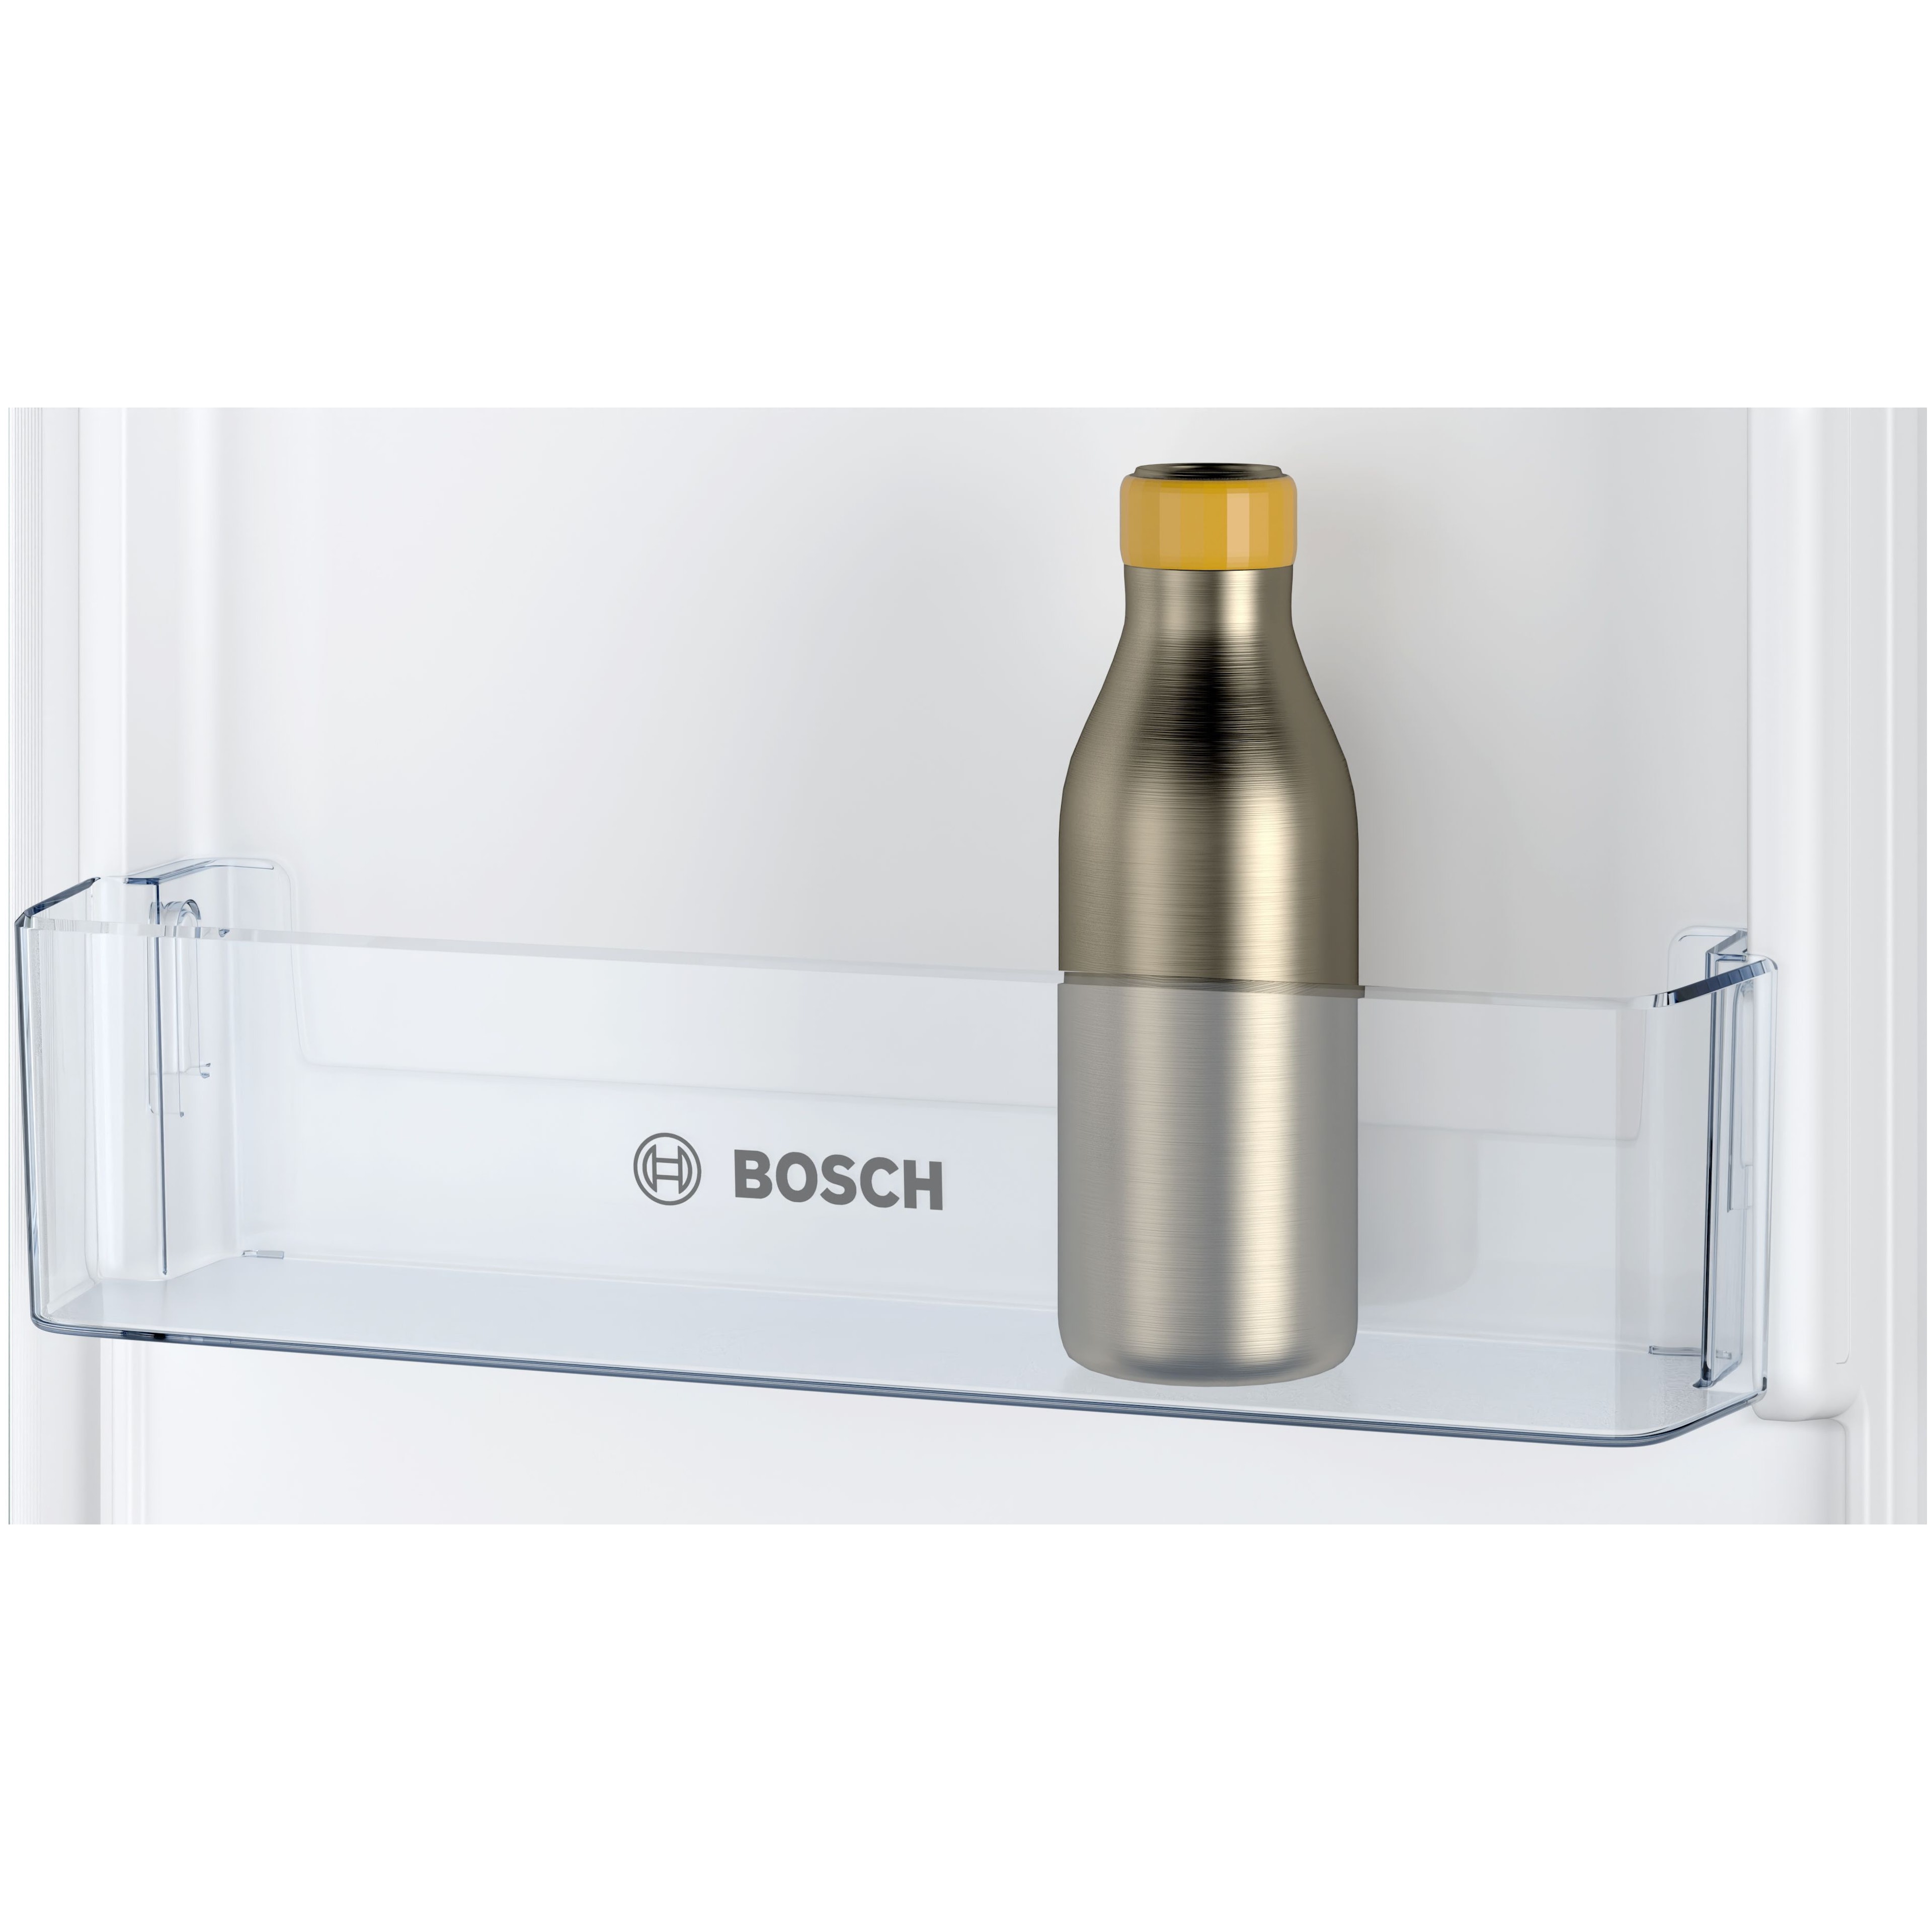 Bosch koelkast inbouw KIV865SE0 afbeelding 4